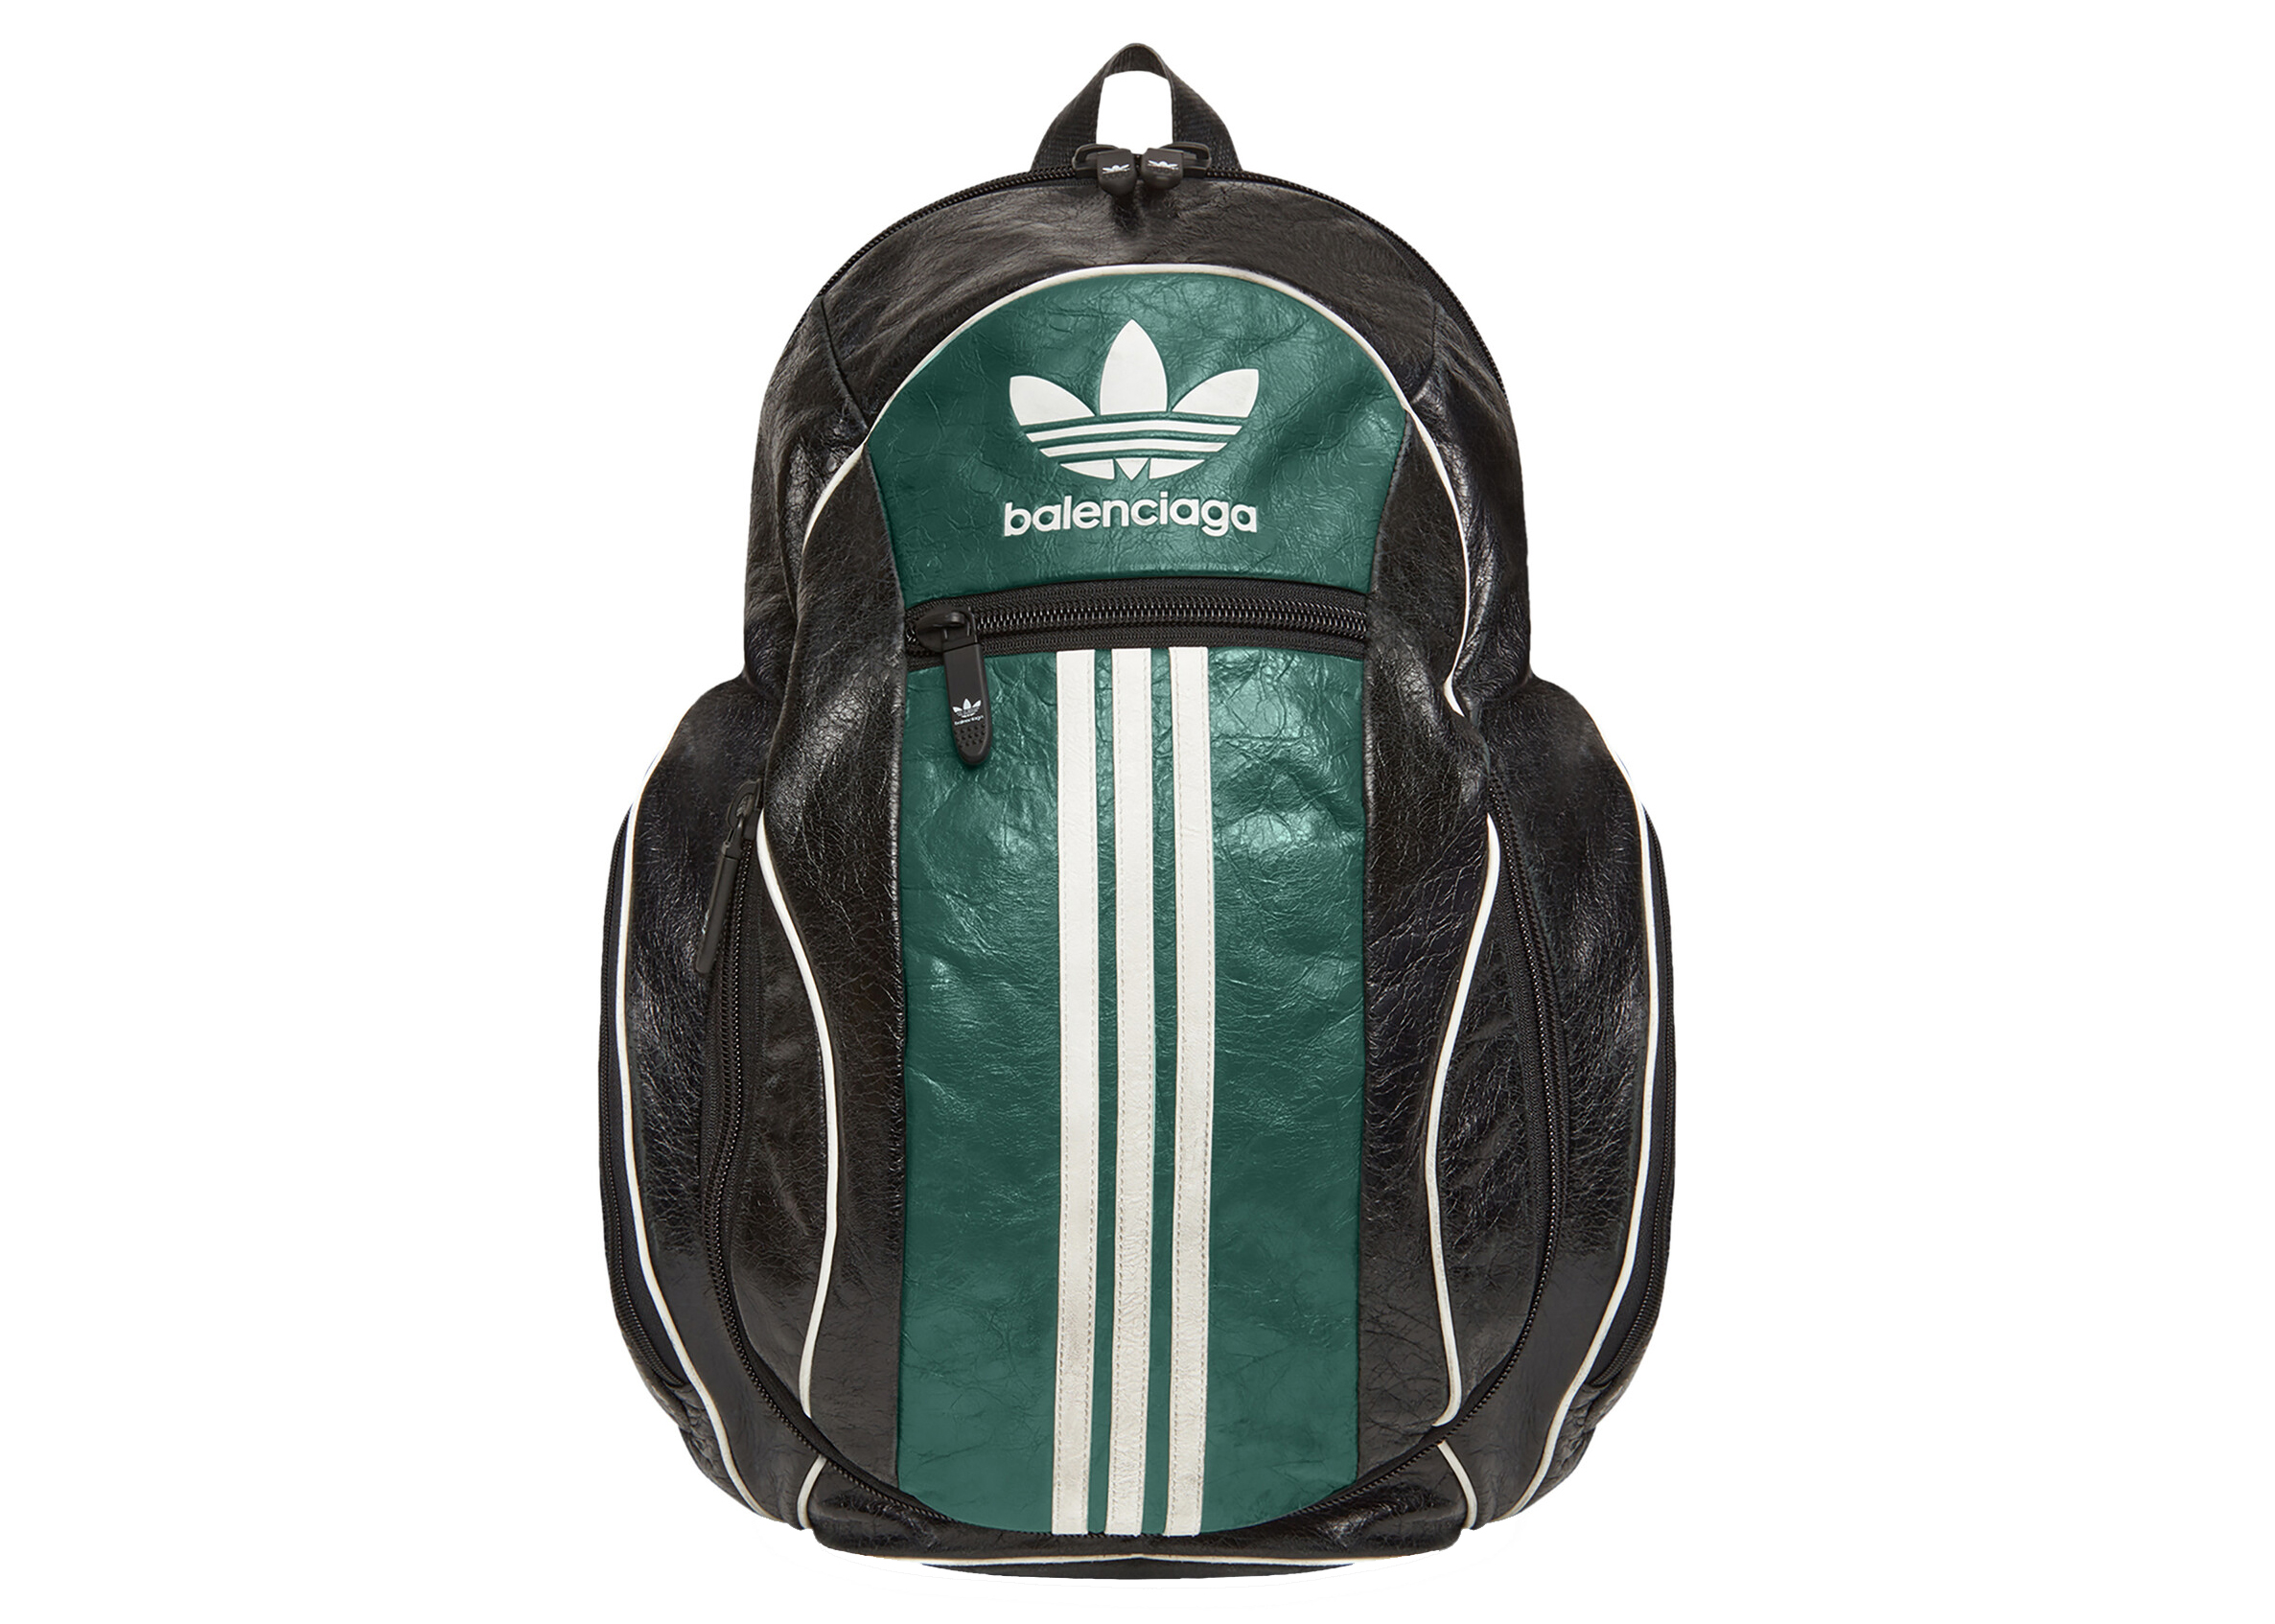 Balenciaga x adidas Large Backpack Black/Green